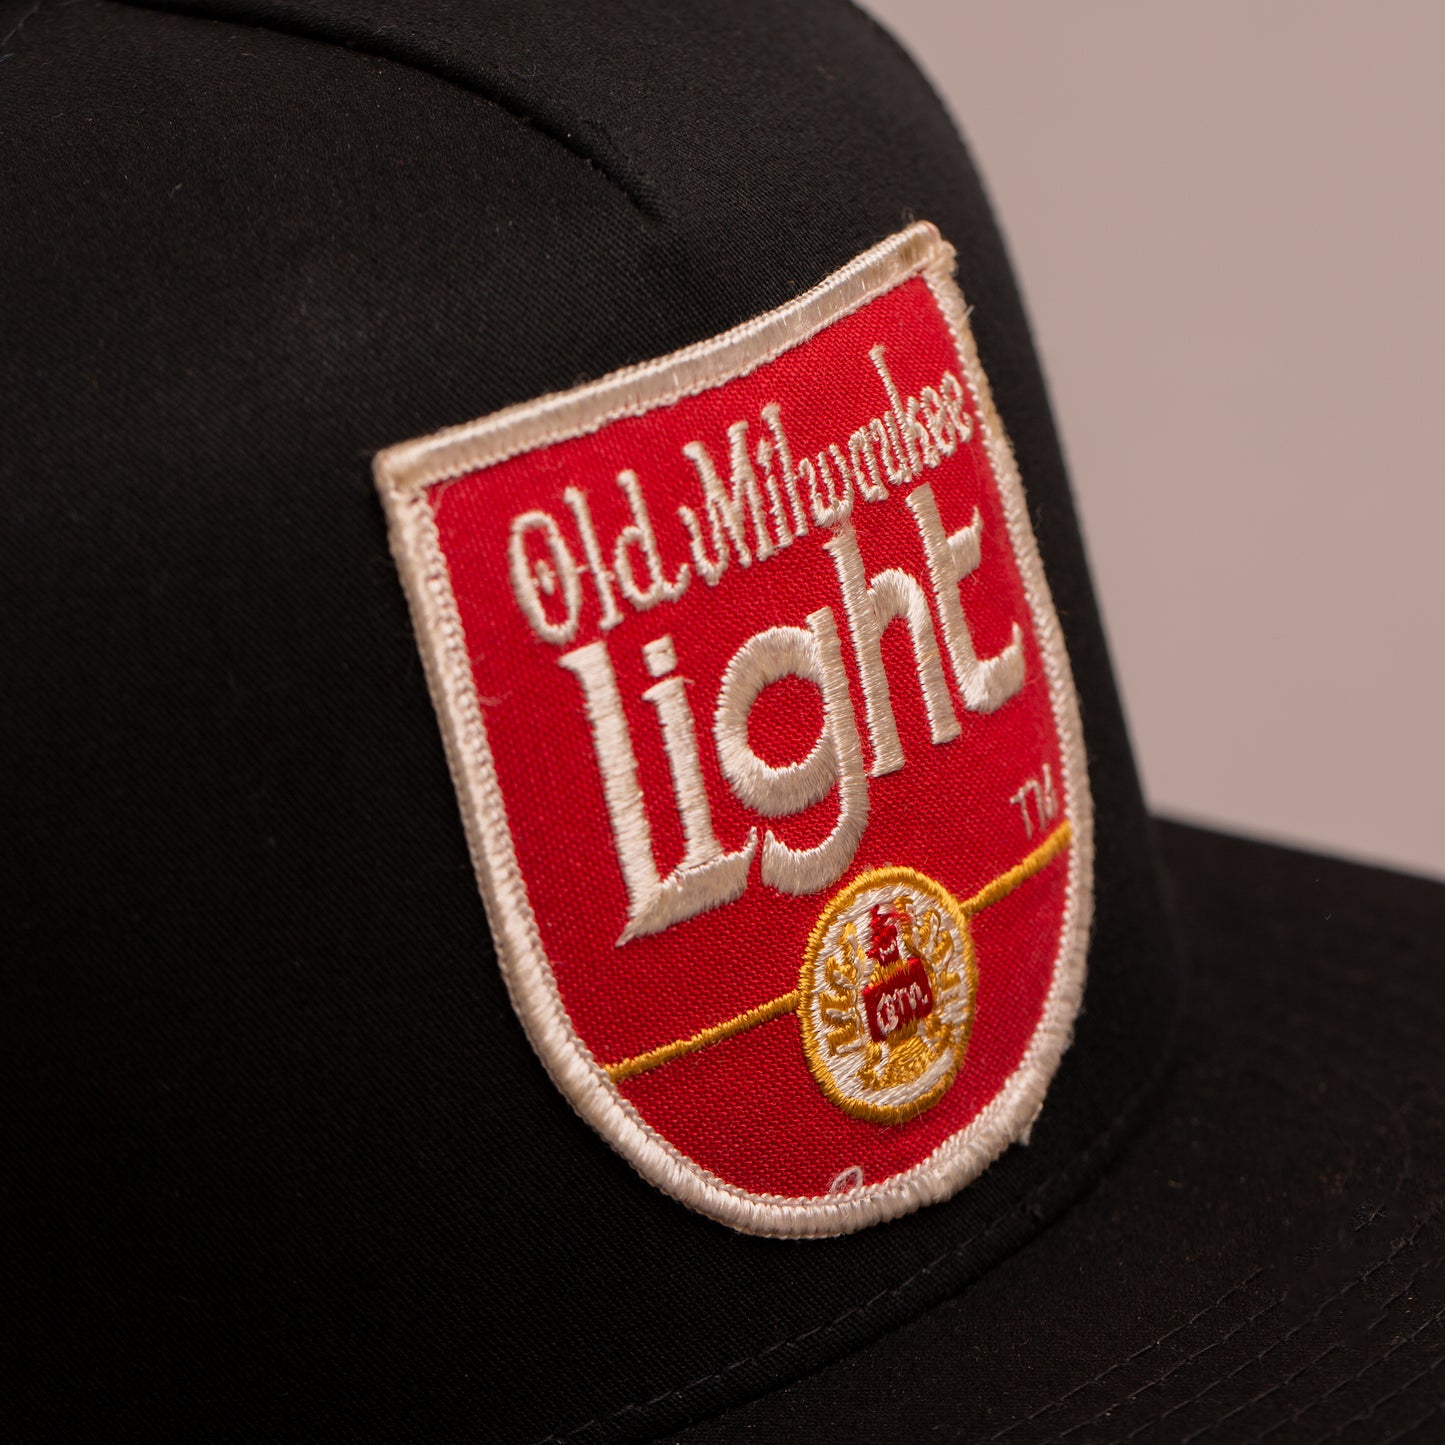 Old Milwaukee Light